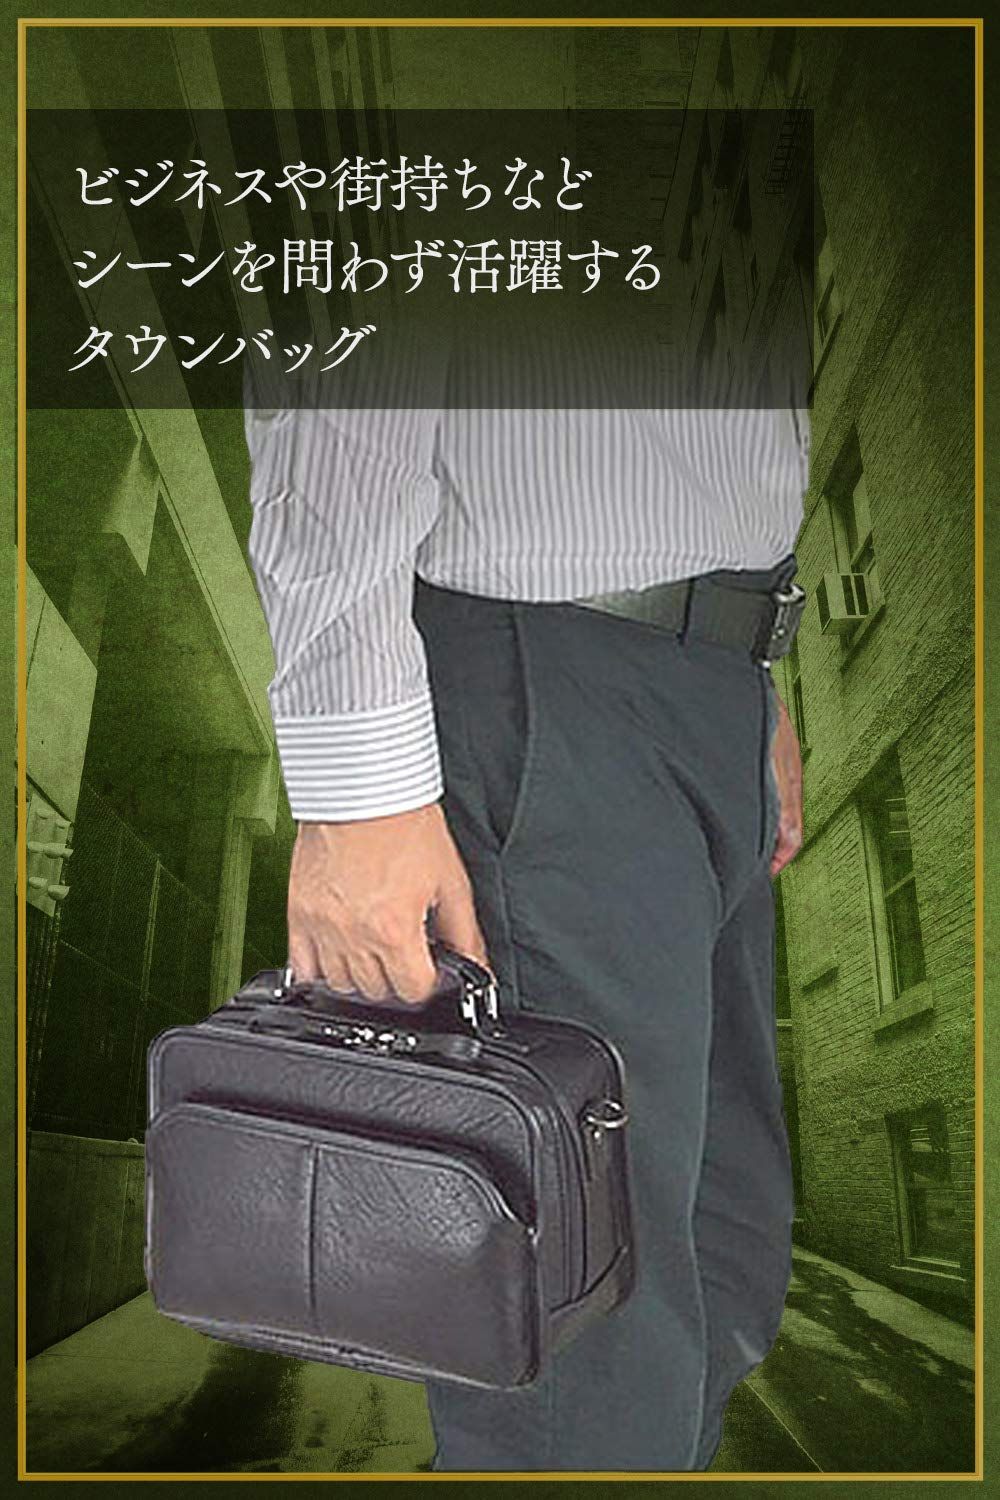 平野鞄 豊岡職人の技 国産 ショルダーバッグ メンズ 斜めがけ 通勤 